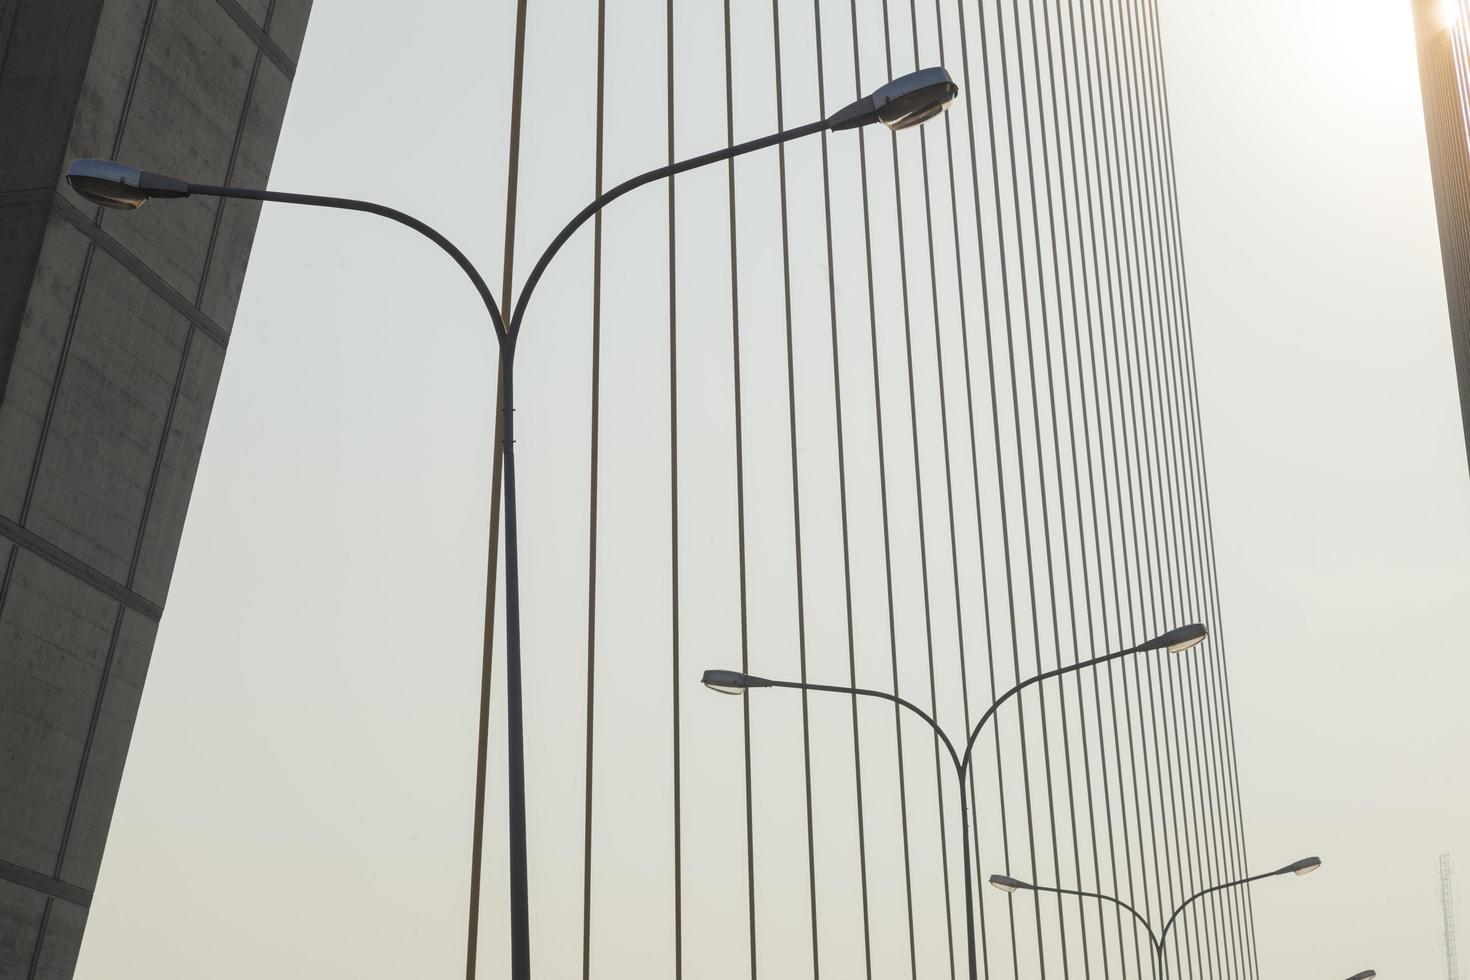 Lamps on the bridge photo